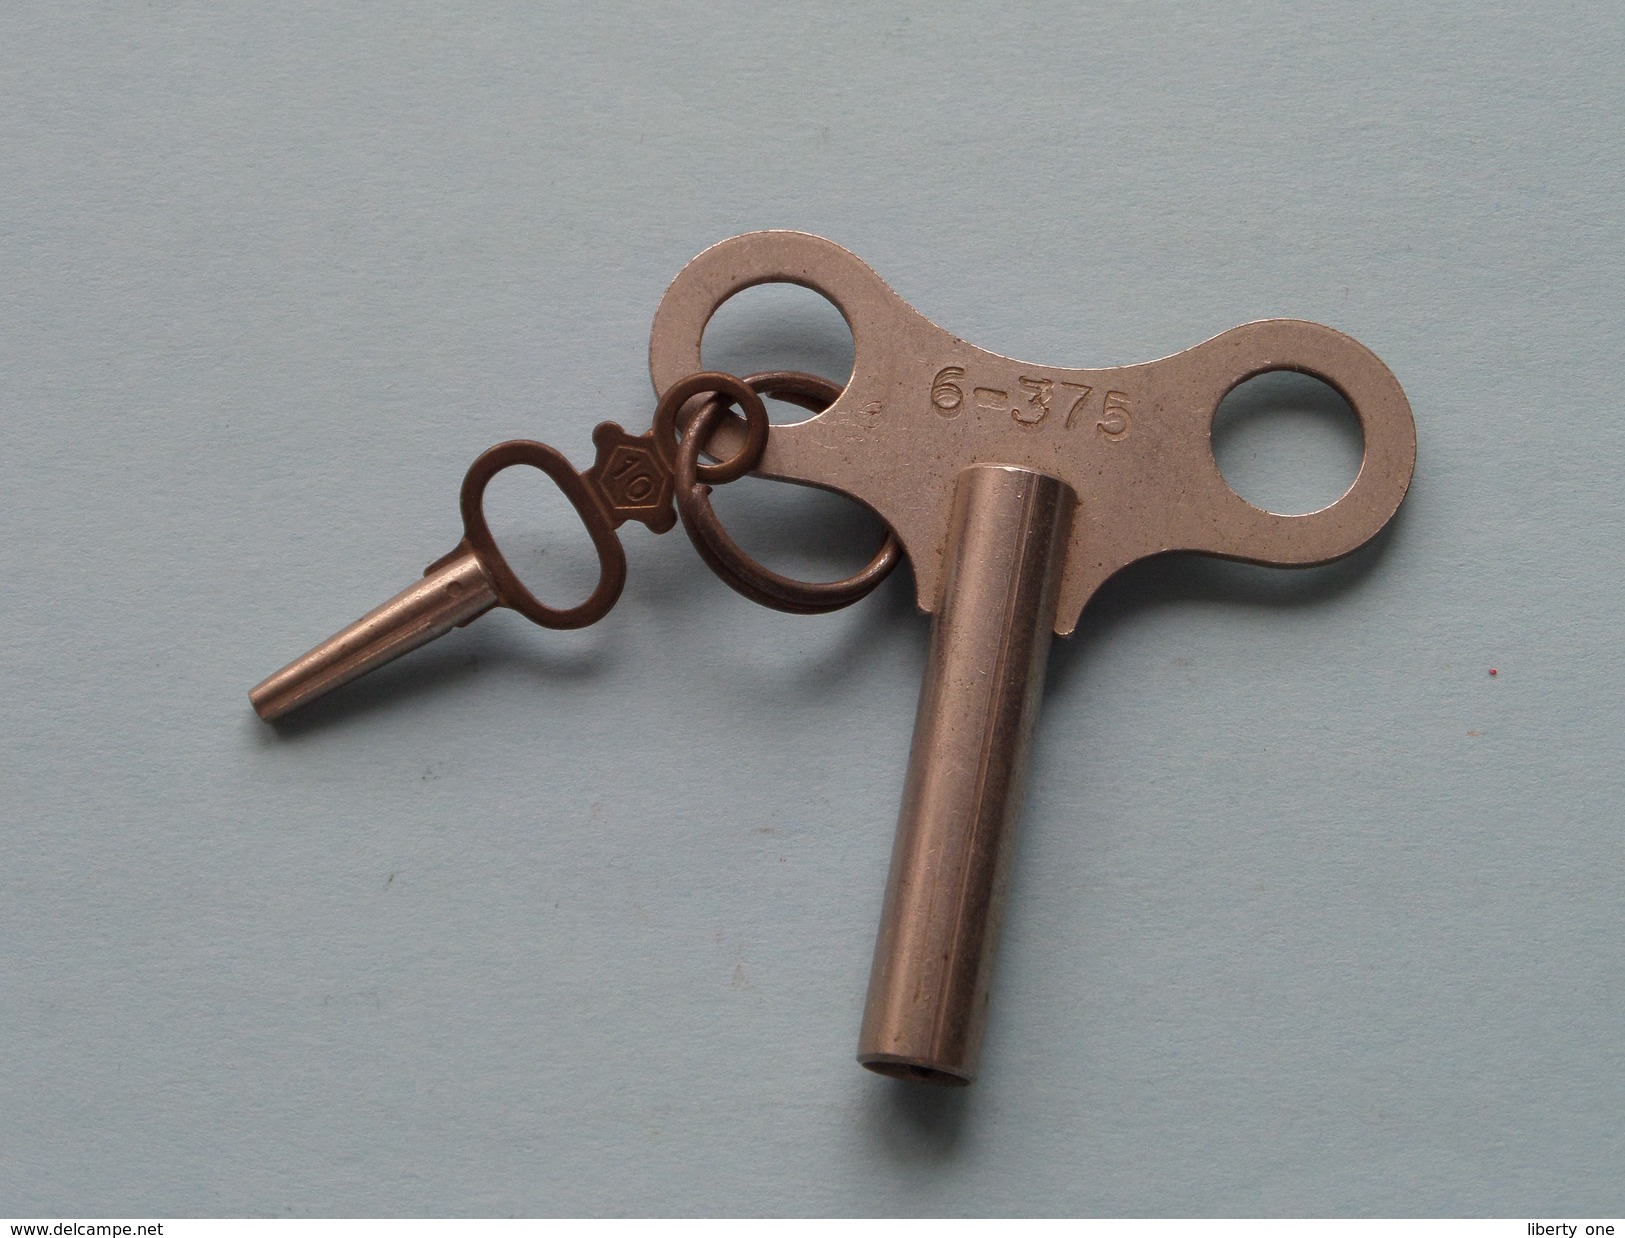 Key / Sleutel Voor Klok / Horloge ( 6-375 ) With Small Key N° 10 ( Metal - Zie Foto Details ) !! - Klokken